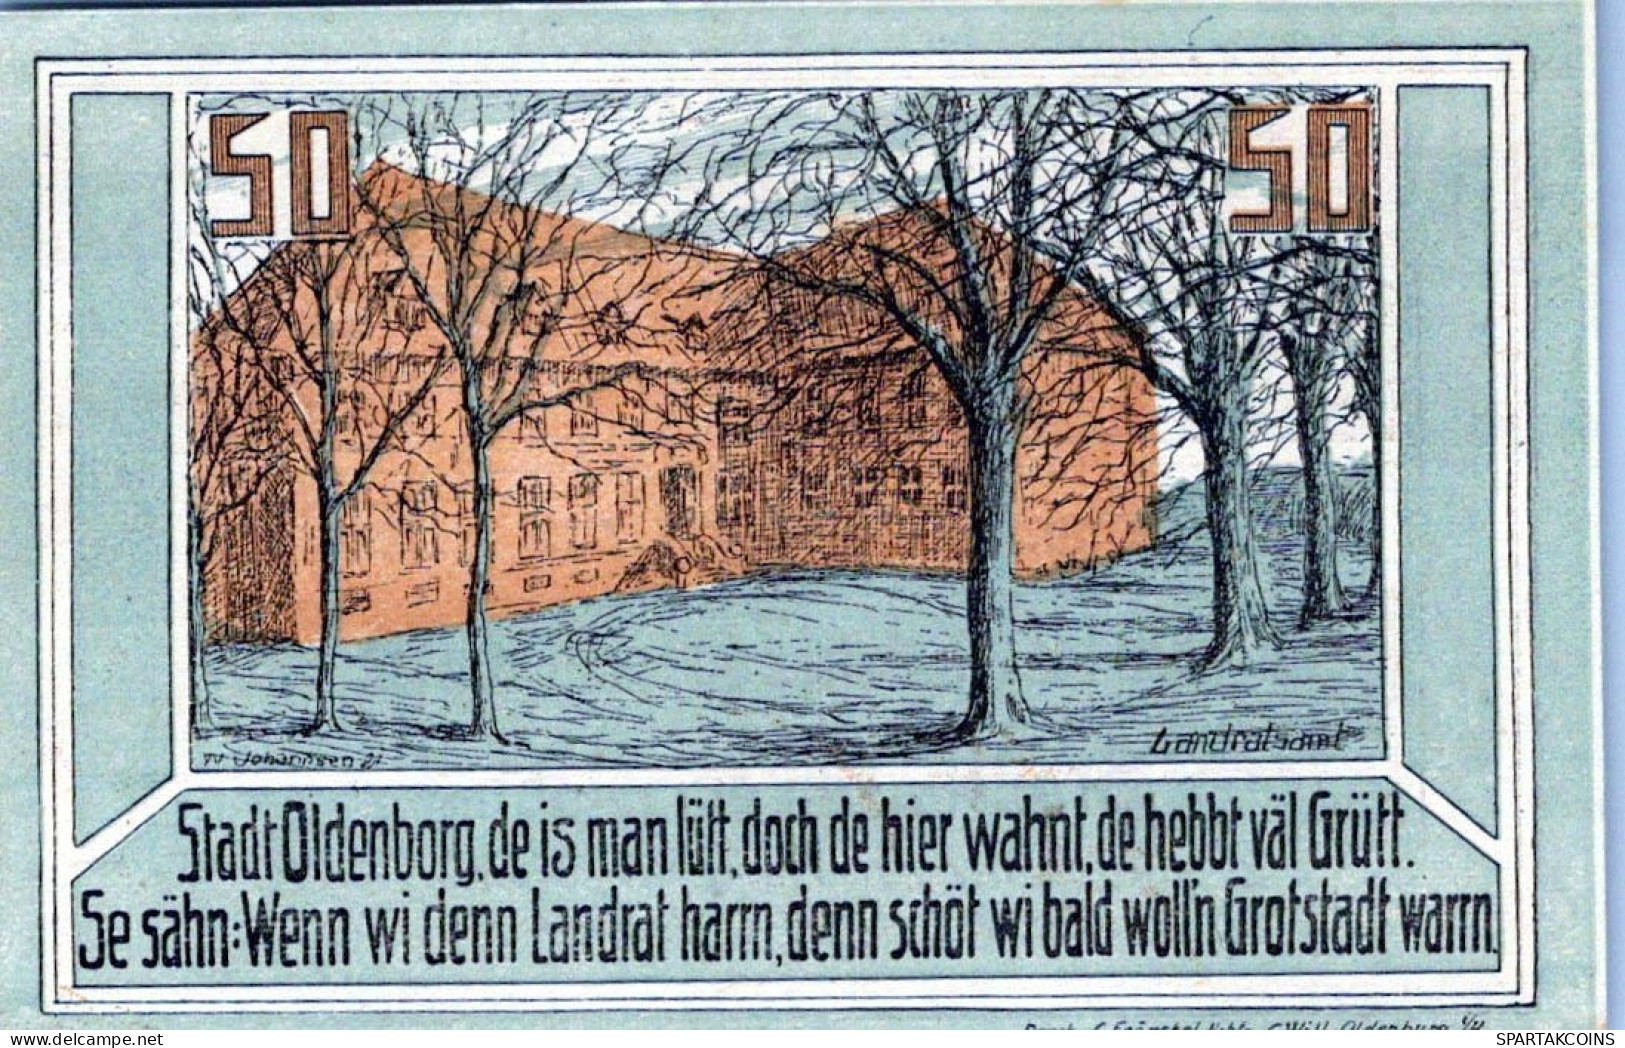 50 PFENNIG 1922 Stadt OLDENBURG IN HOLSTEIN UNC DEUTSCHLAND #PI833 - [11] Local Banknote Issues